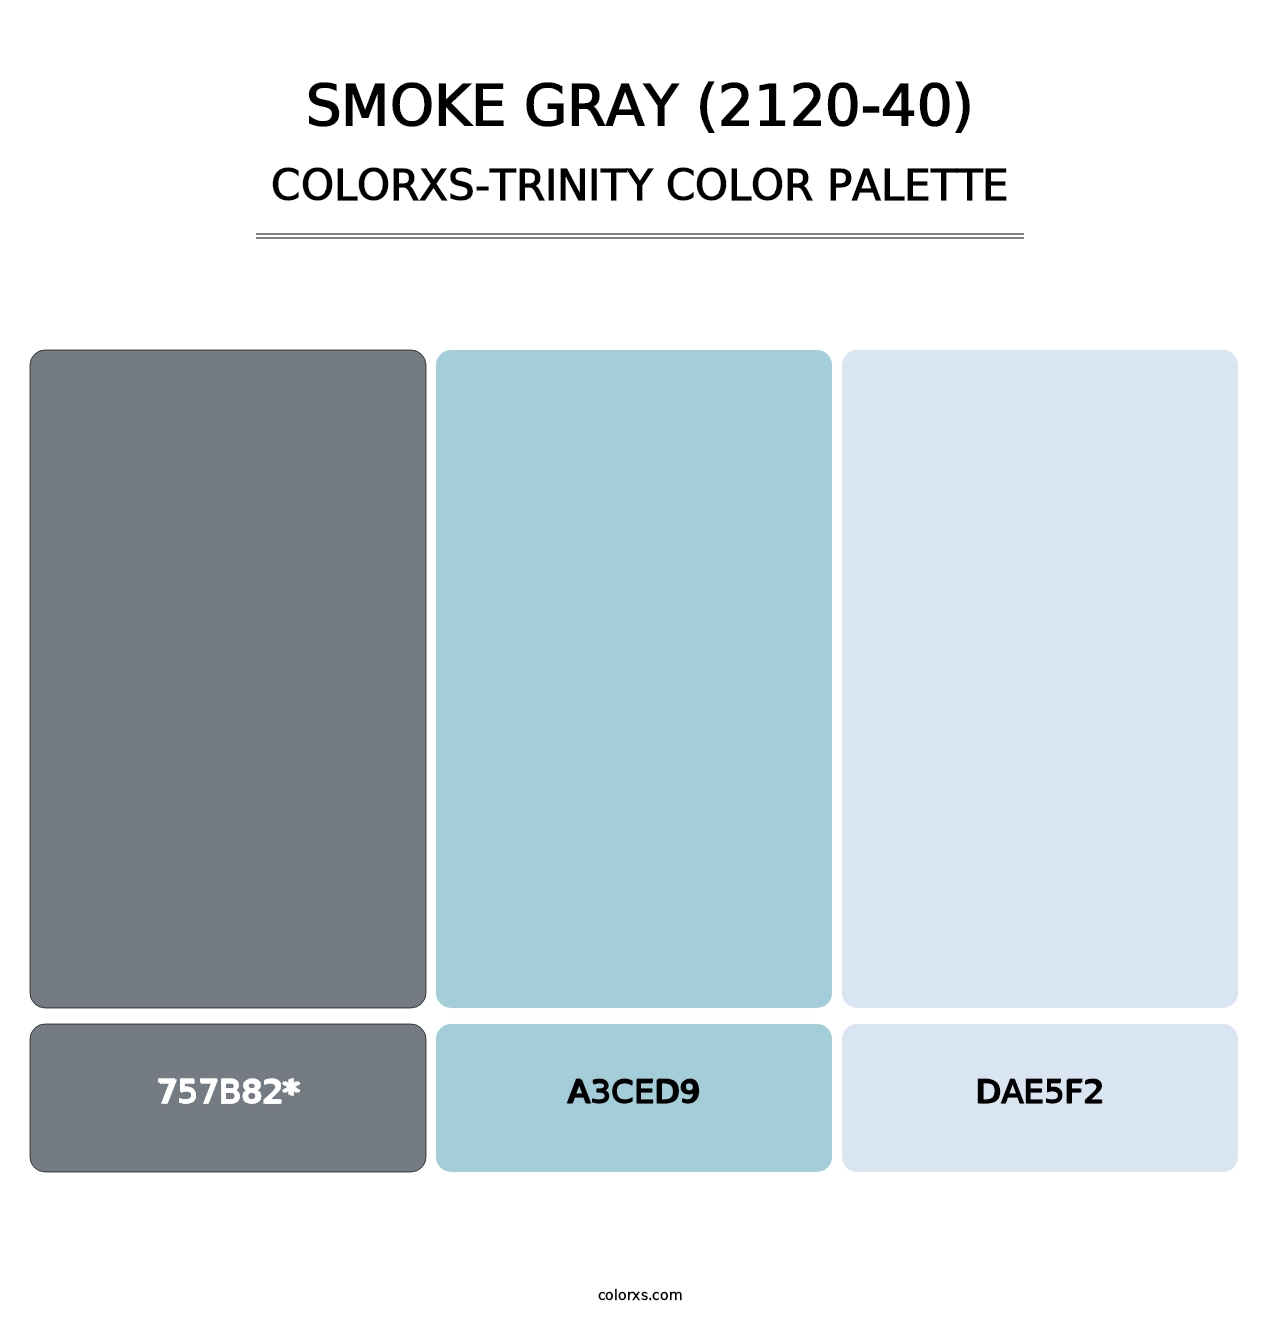 Smoke Gray (2120-40) - Colorxs Trinity Palette